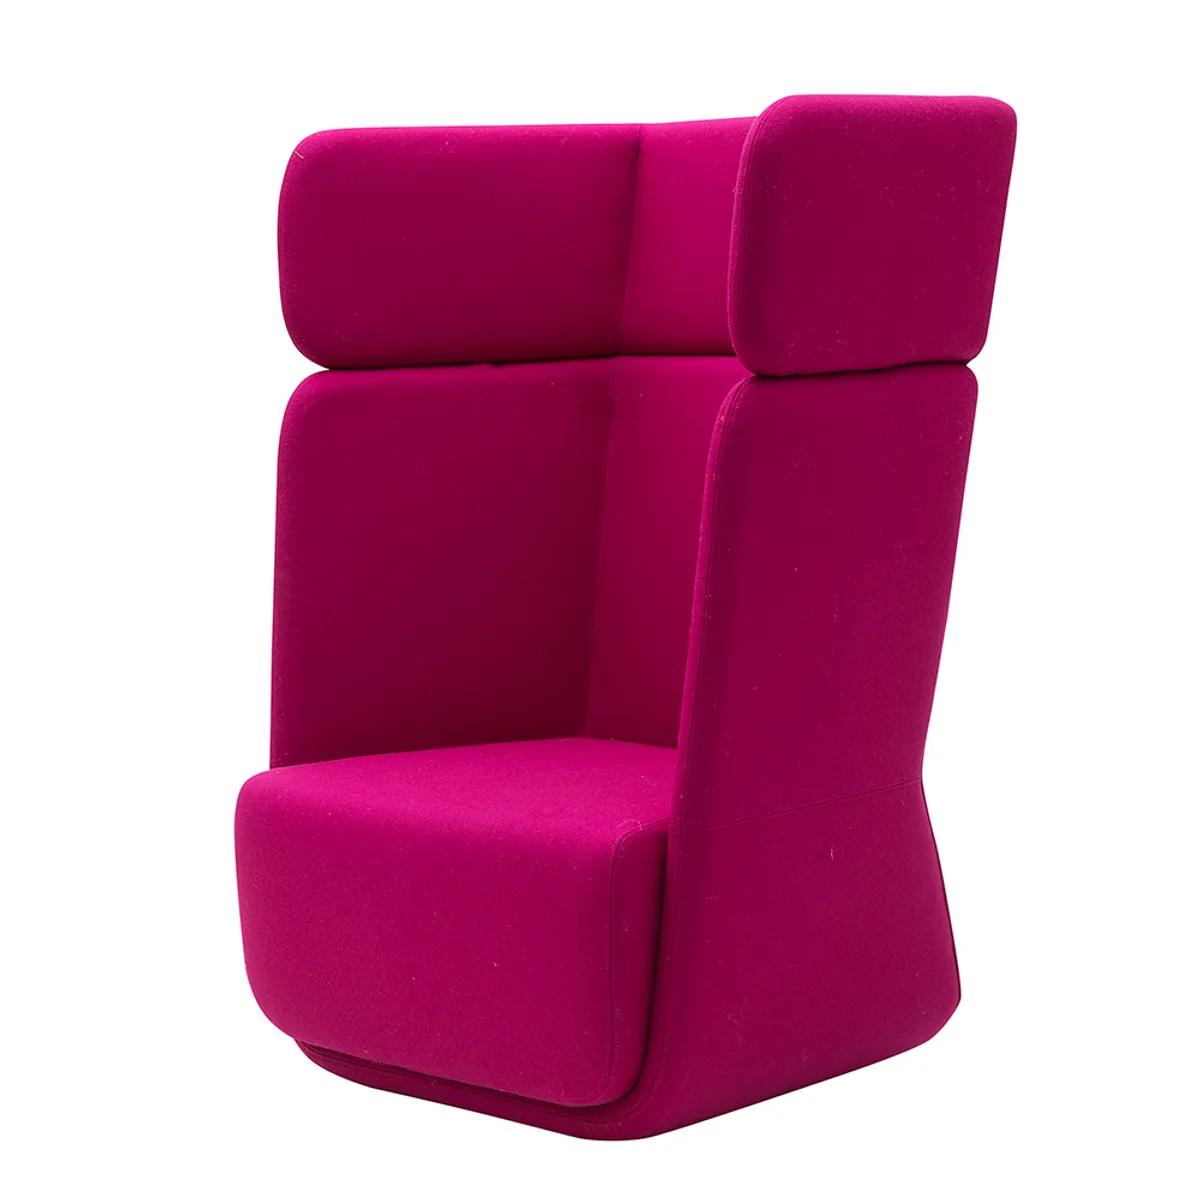 Cosmopolitan Chair 052